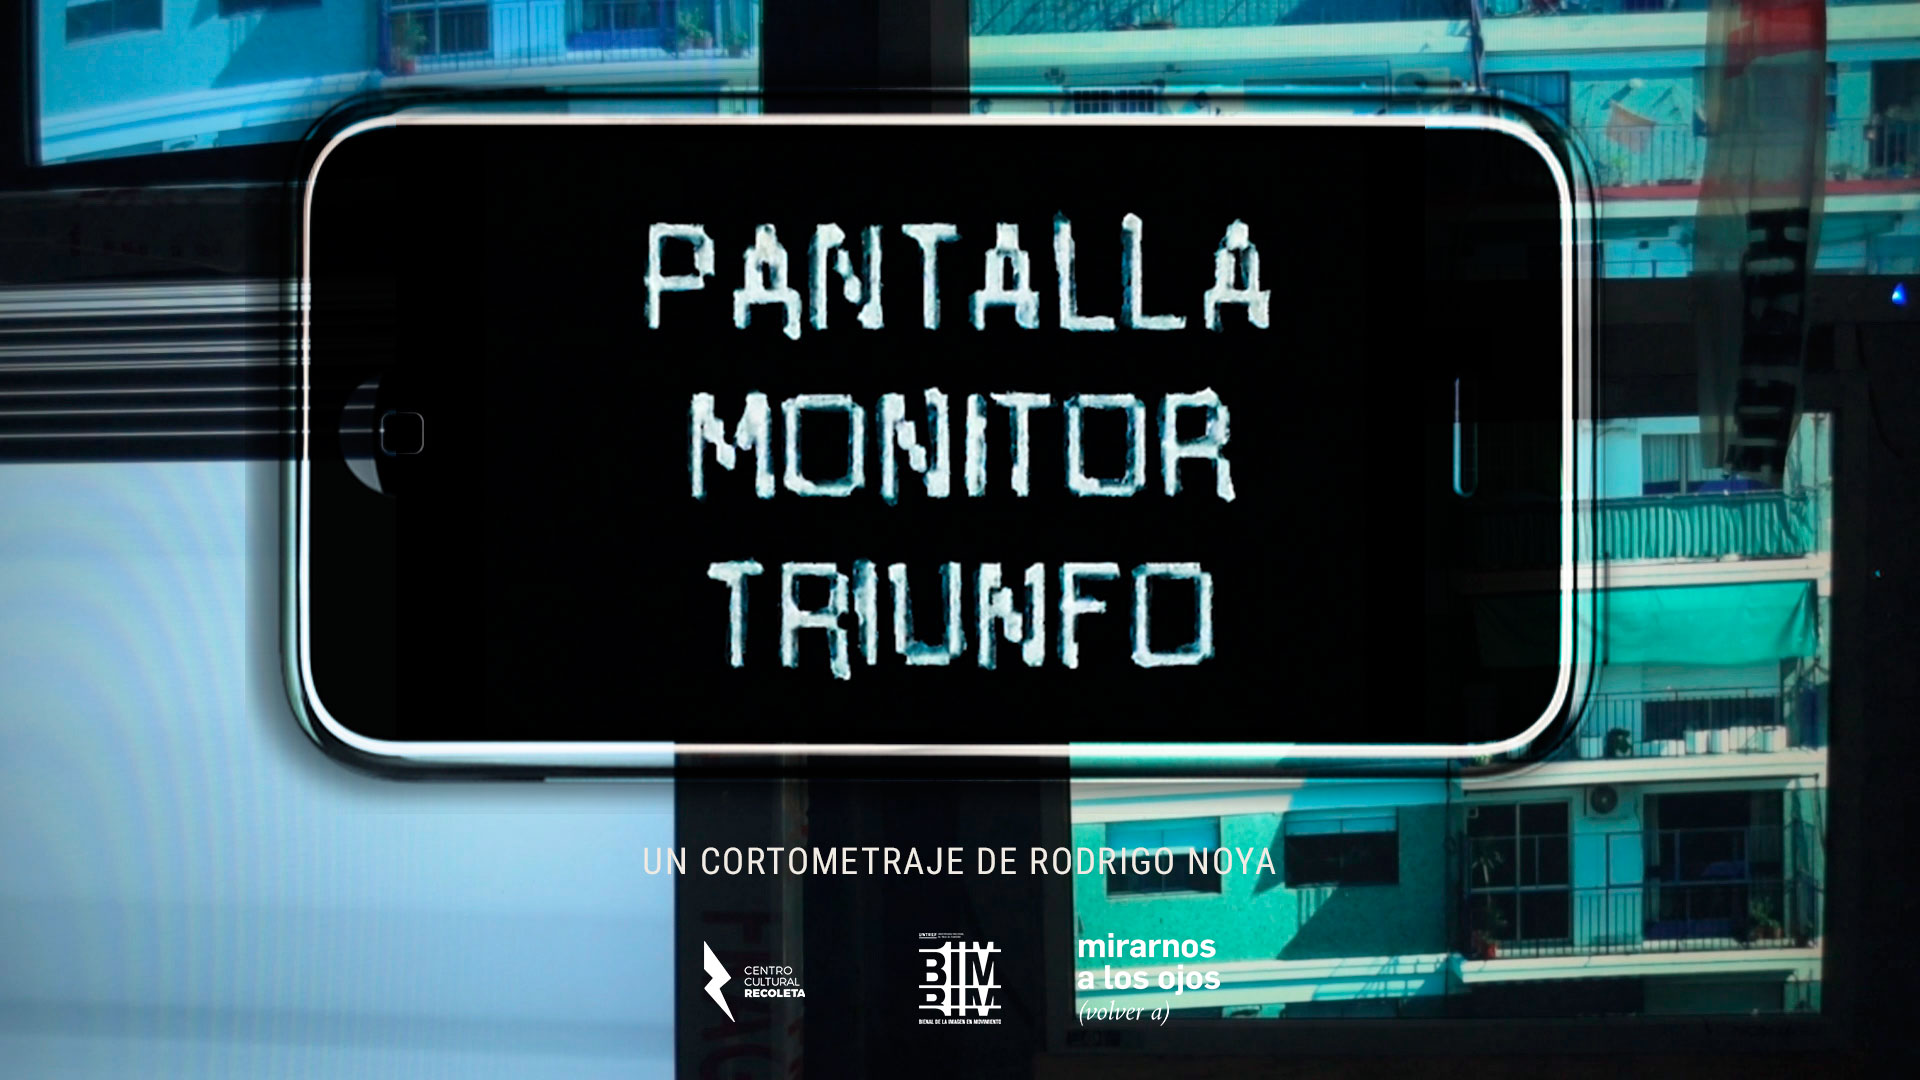 Pantalla Monitor Triunfo